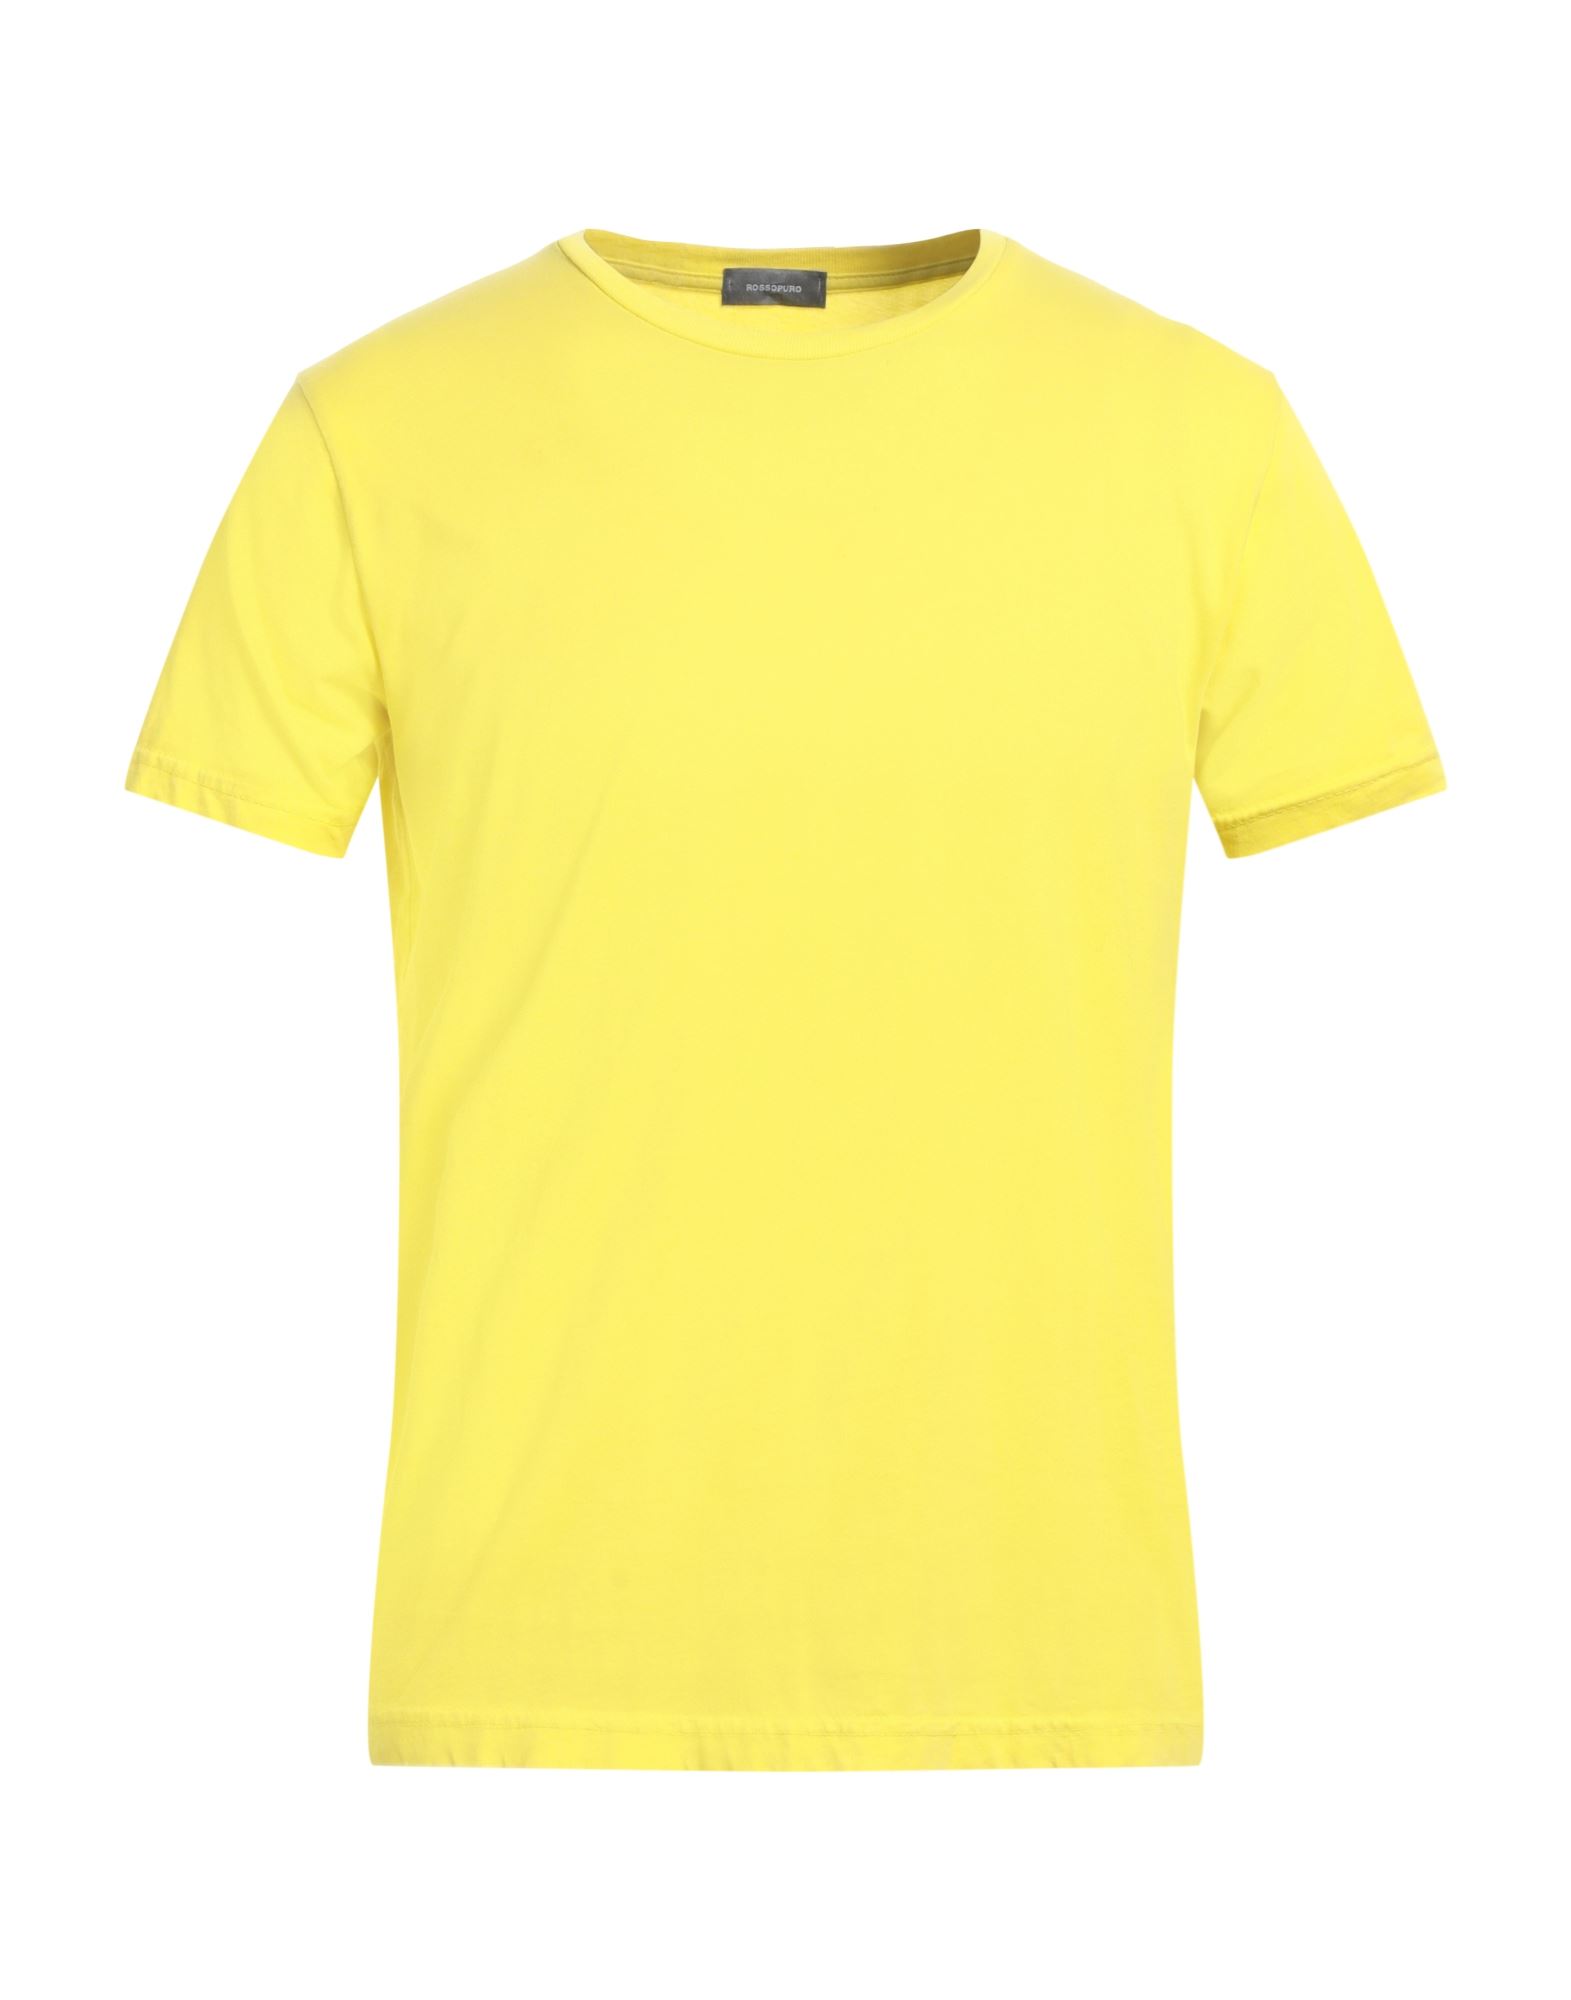 ROSSOPURO T-shirts Herren Gelb von ROSSOPURO